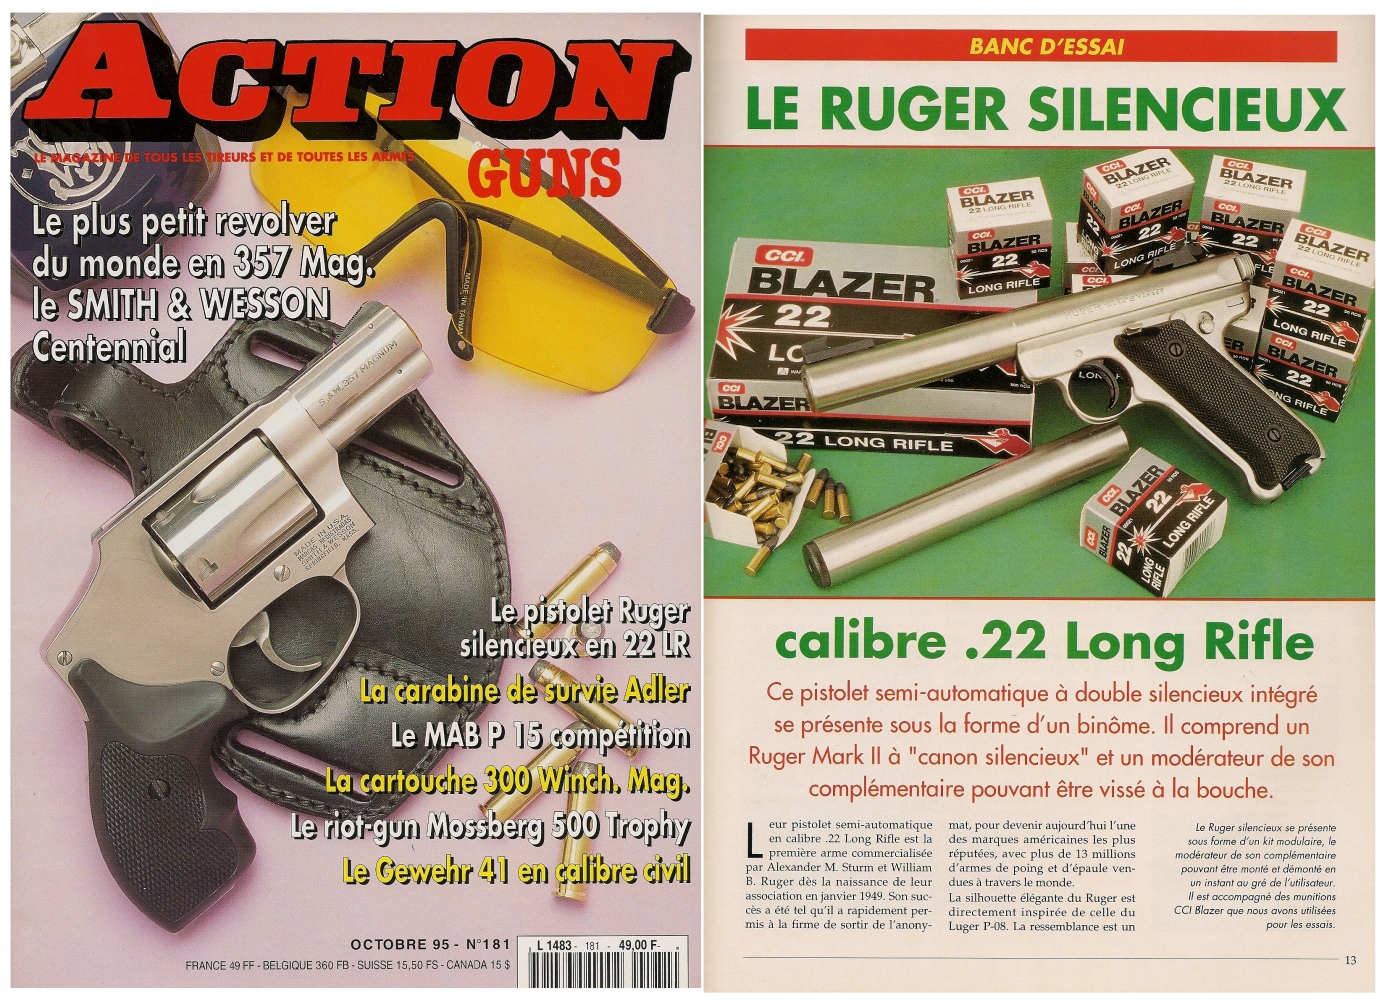 Le banc d'essai du pistolet Ruger Mark II à canon silencieux a été publié sur 5 pages dans le magazine Action Guns n°181 (octobre 1995).